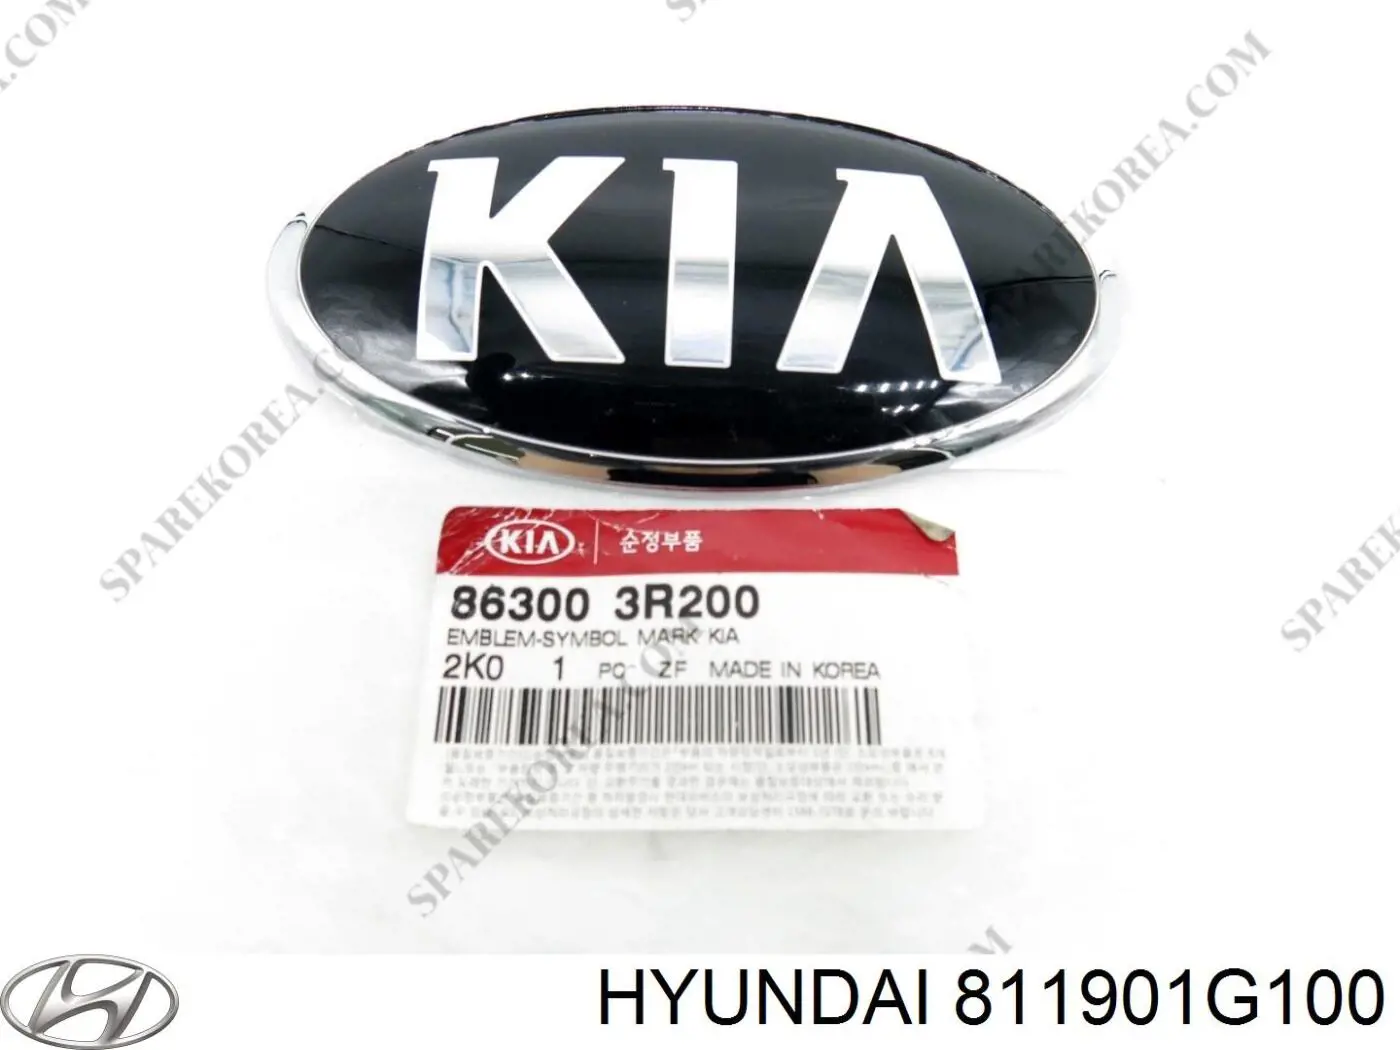 811901G100 Hyundai/Kia tirador del cable del capó delantero